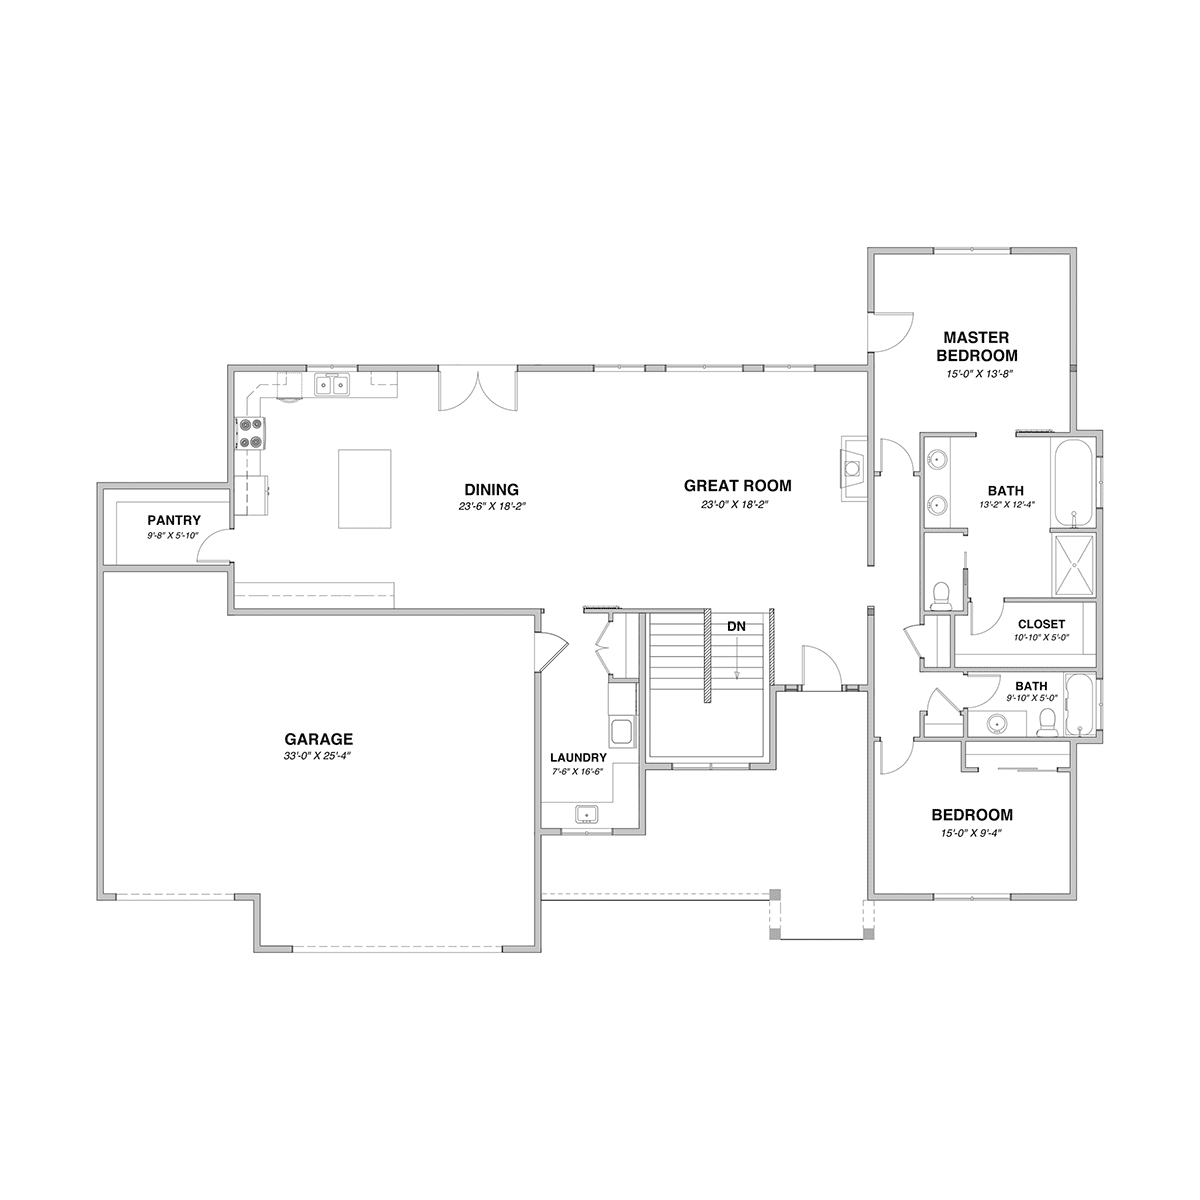 The Meadow View Main Floor Plan - Hayden, ID